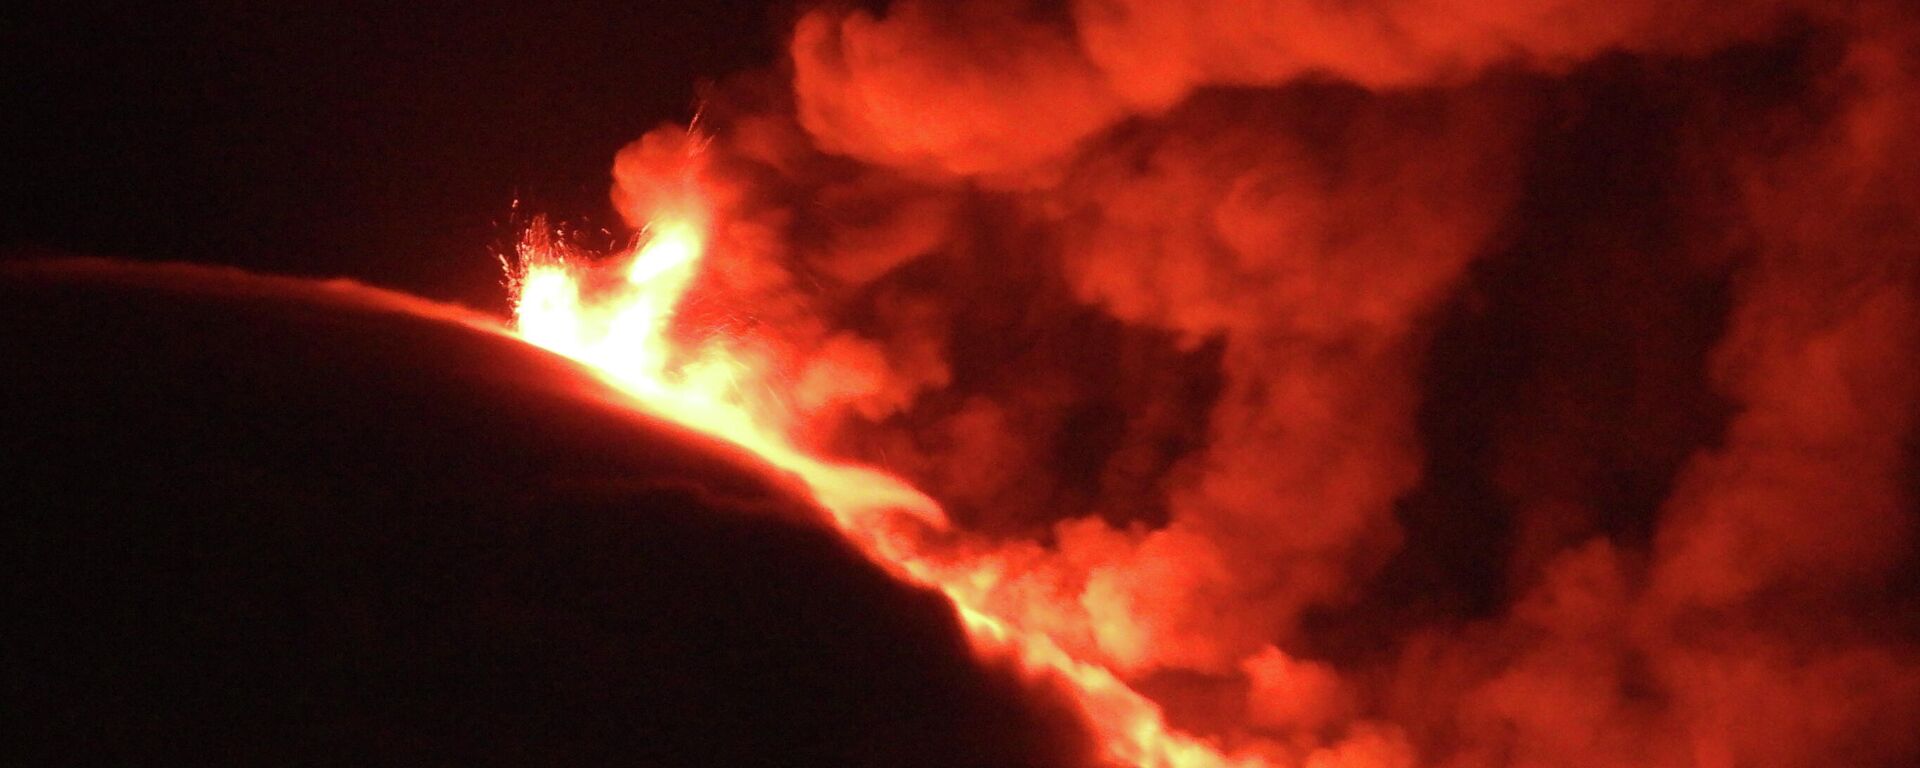 Una erupción del monte Etna el 10 de marzo - Sputnik Mundo, 1920, 15.03.2021